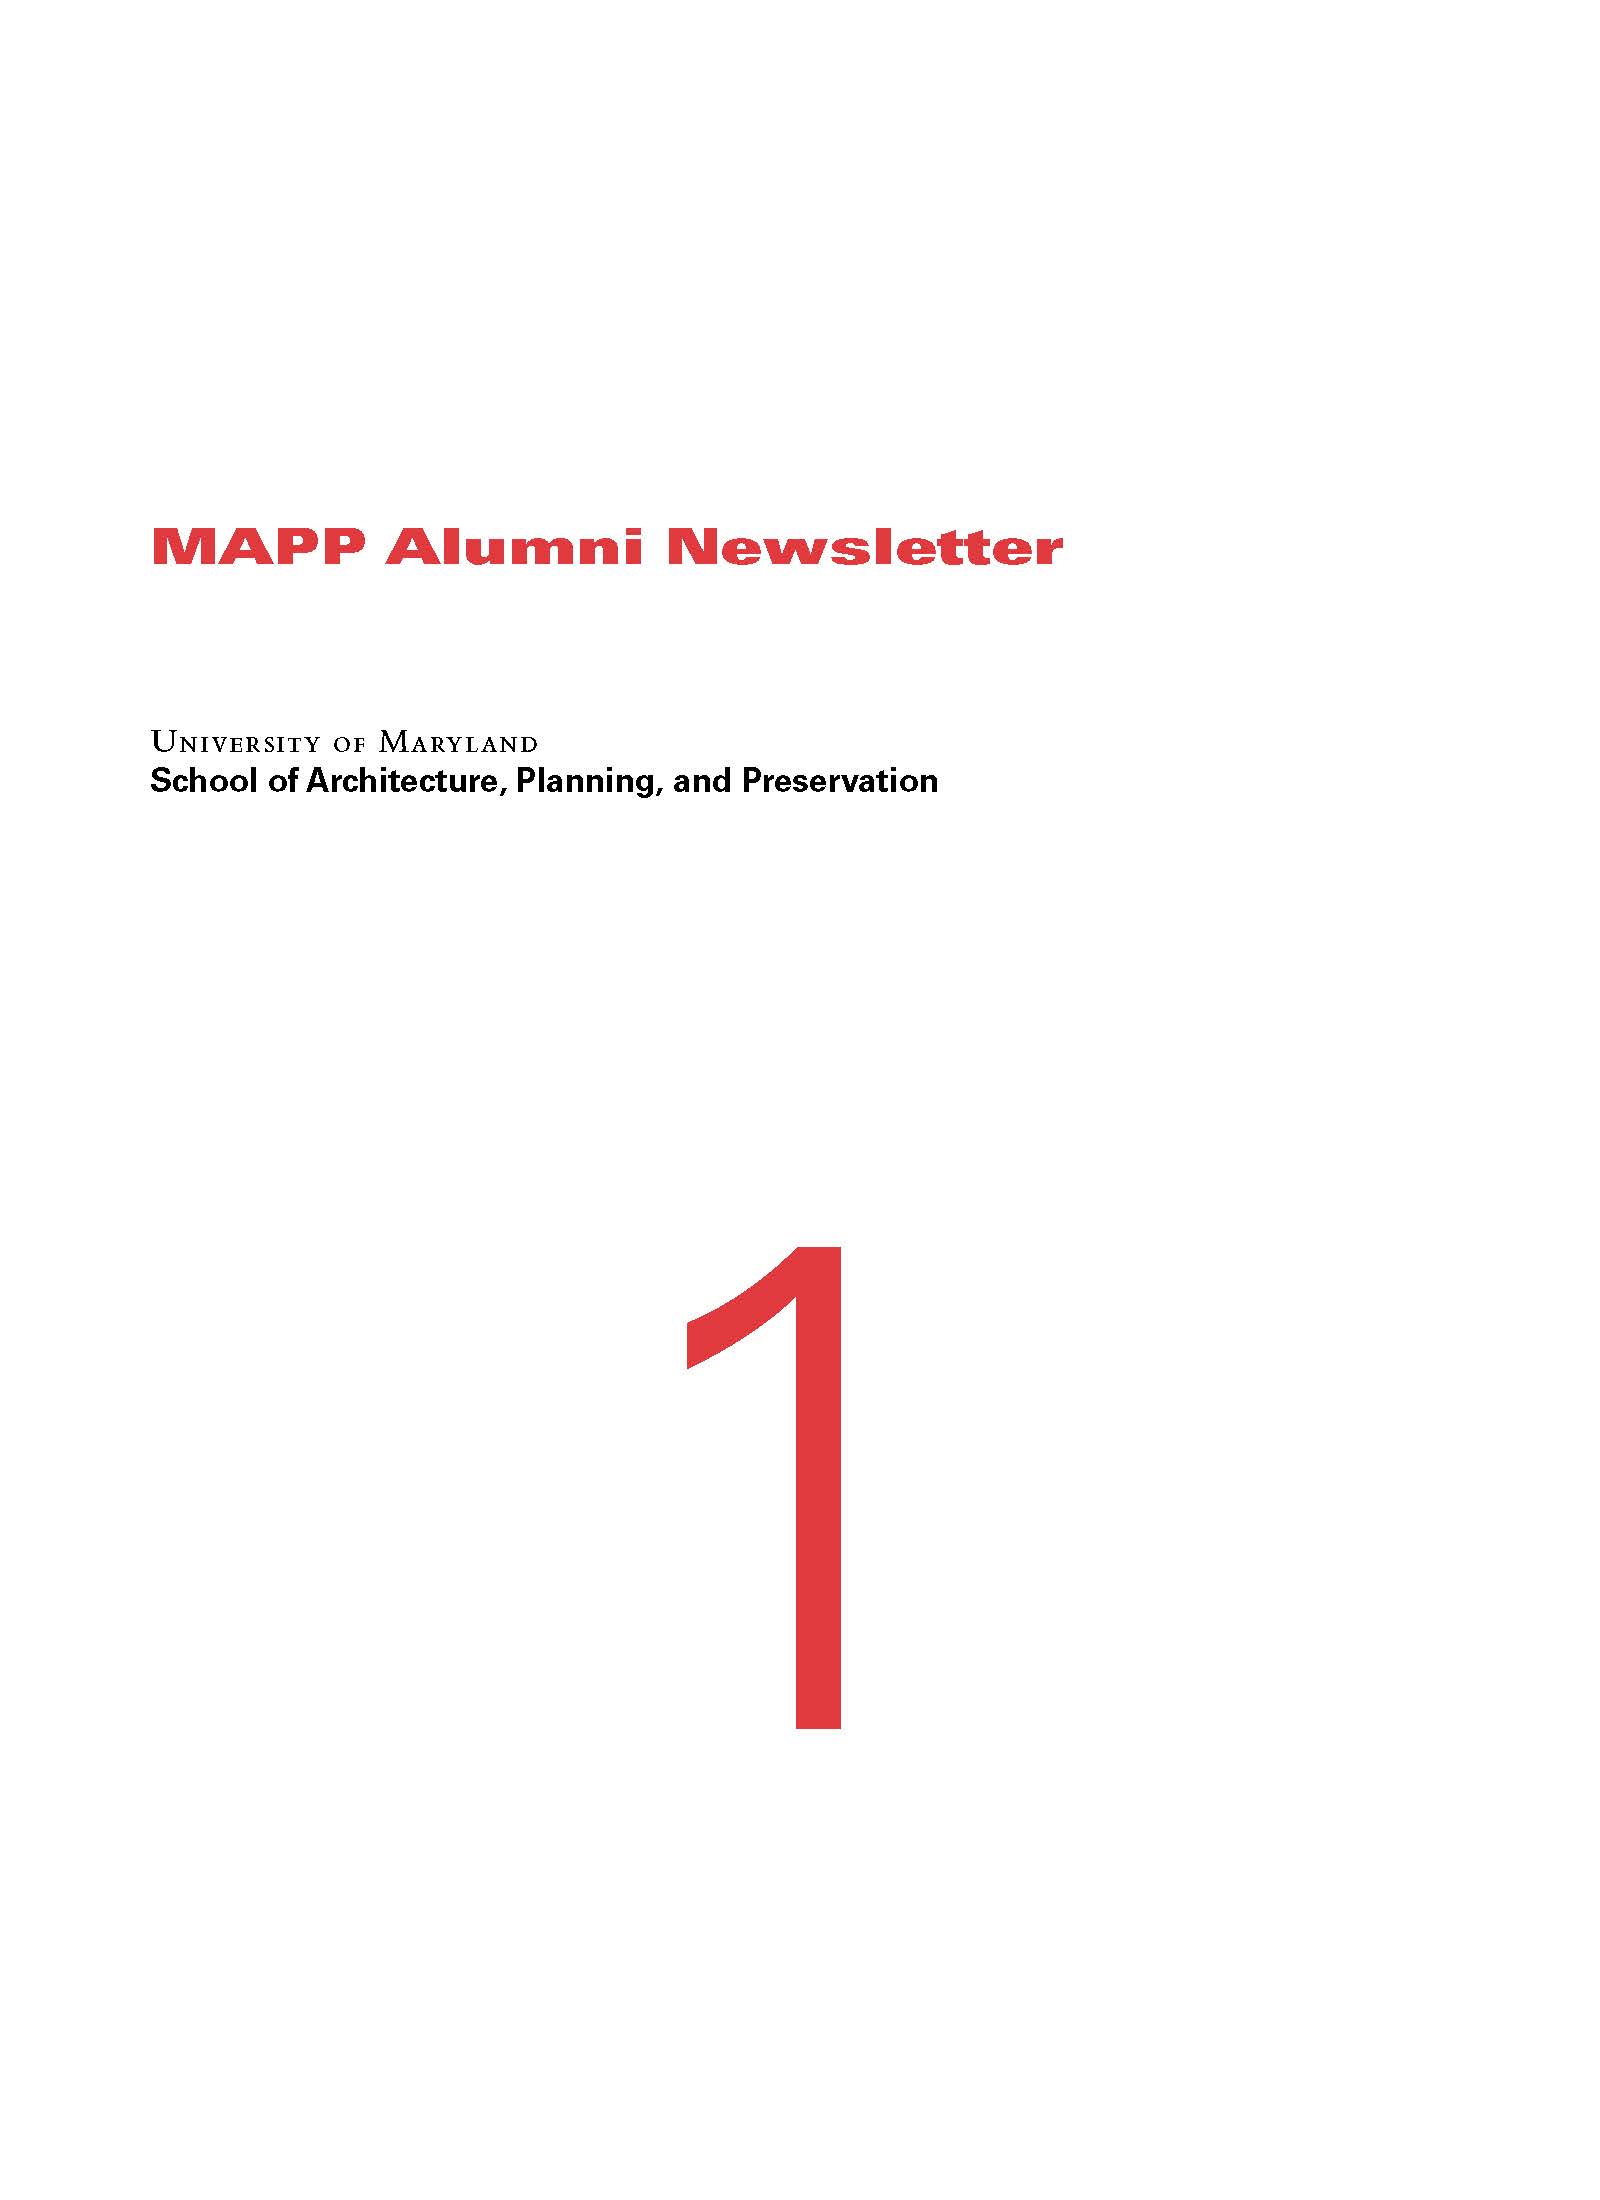 MAPP Alumni Newsletter 1